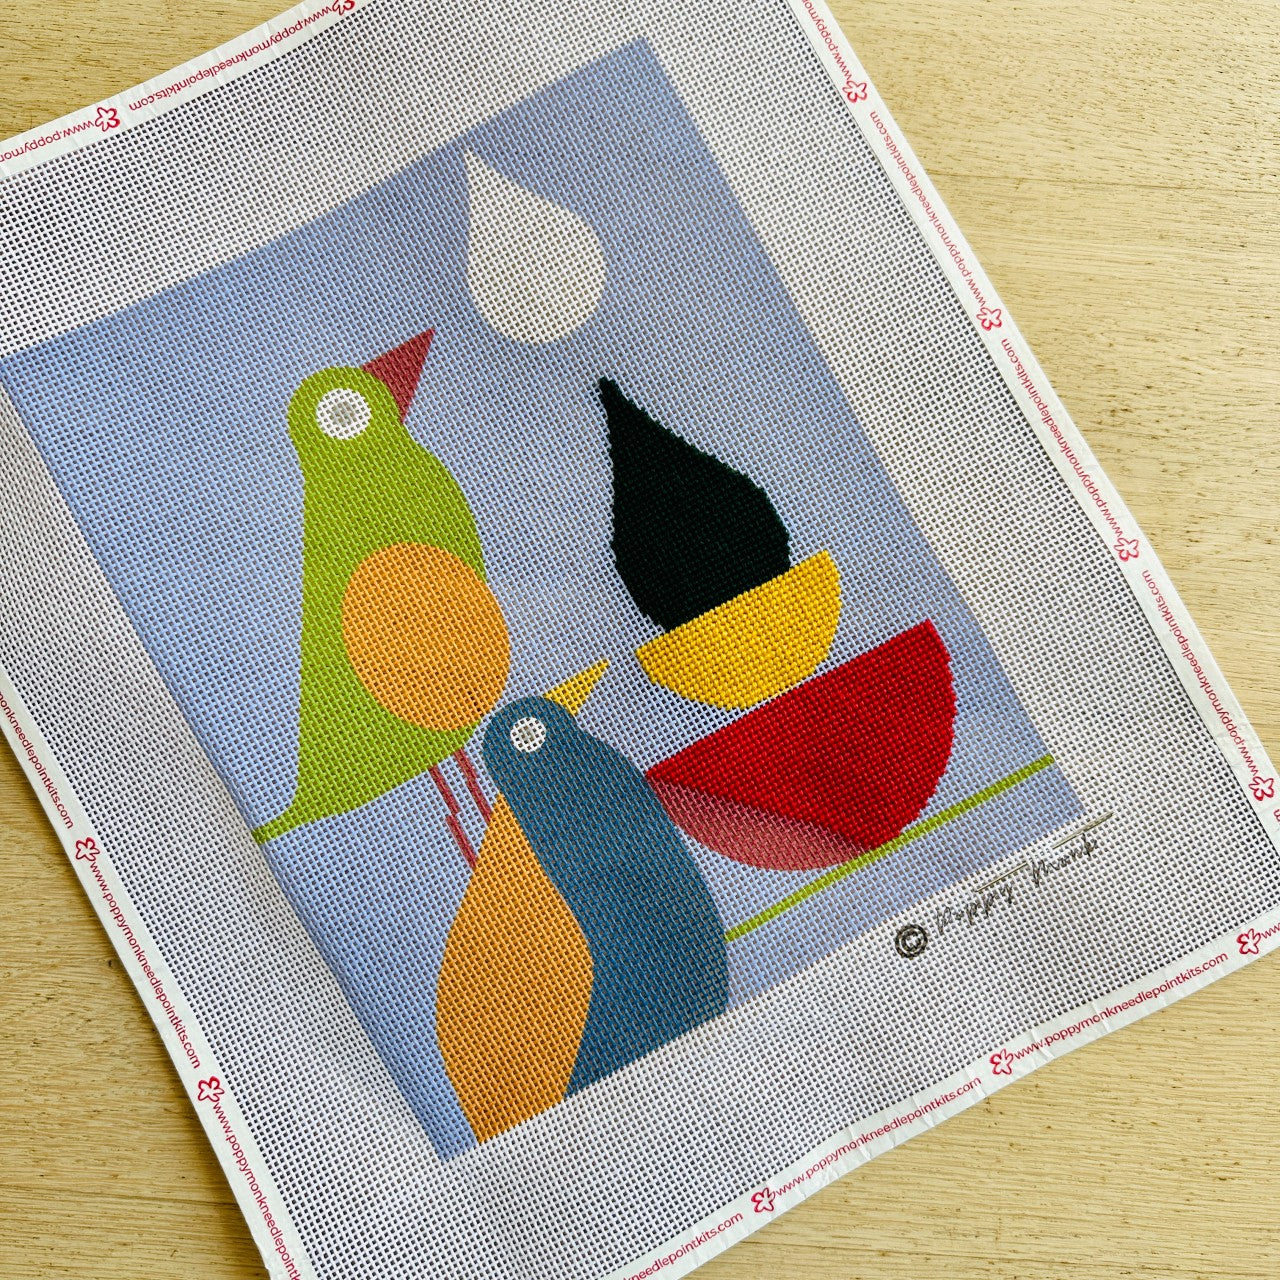 The Three Birds Needlepoint Kit